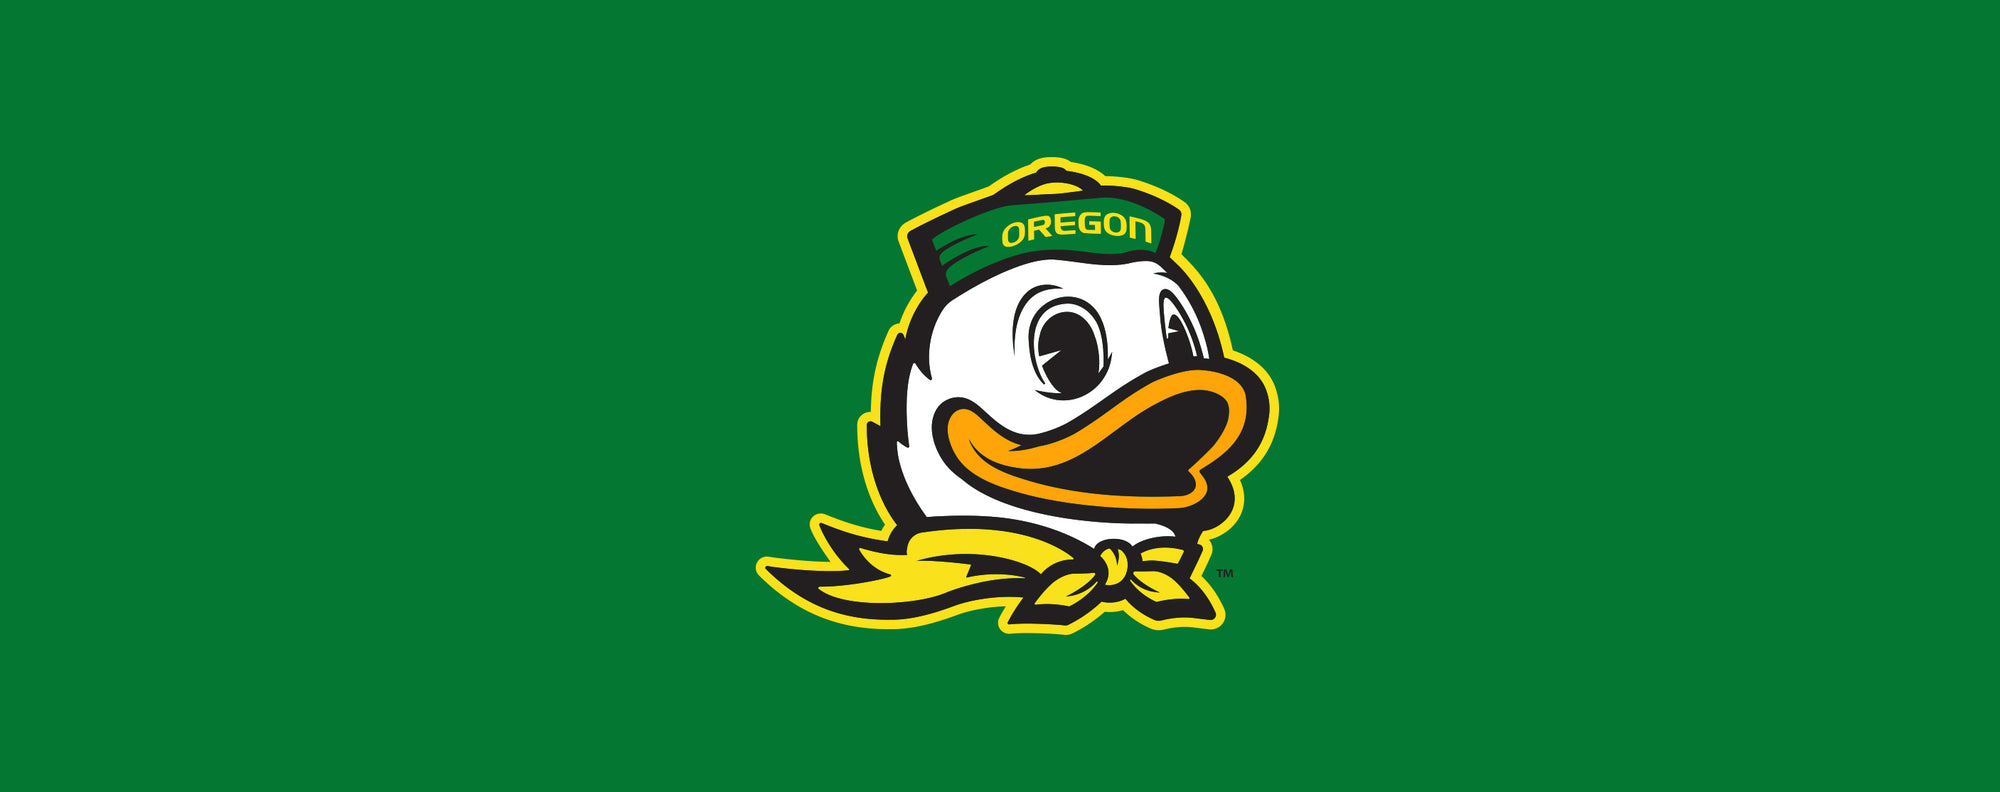 Oregon Ducks – For Bare Feet